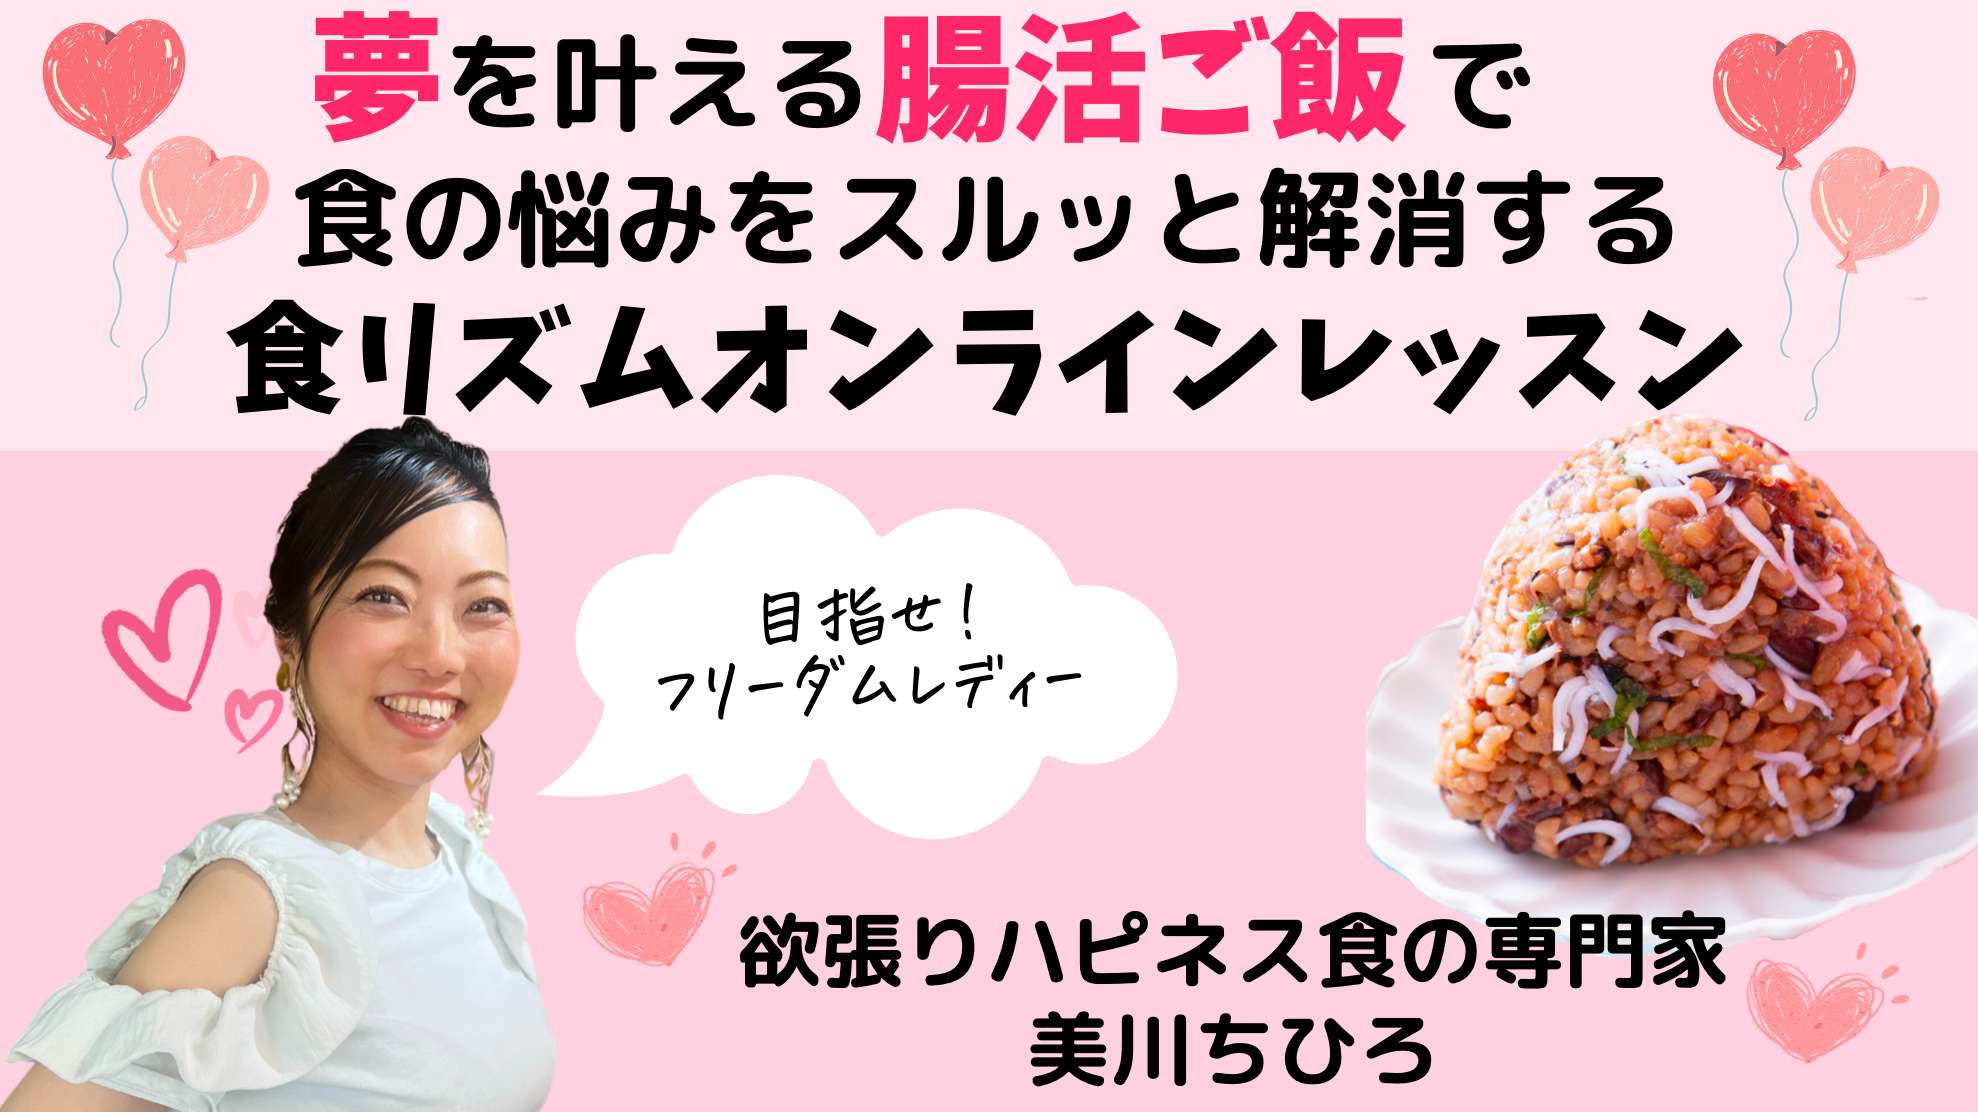 美川ちひろハピネス食の企画書表紙.png